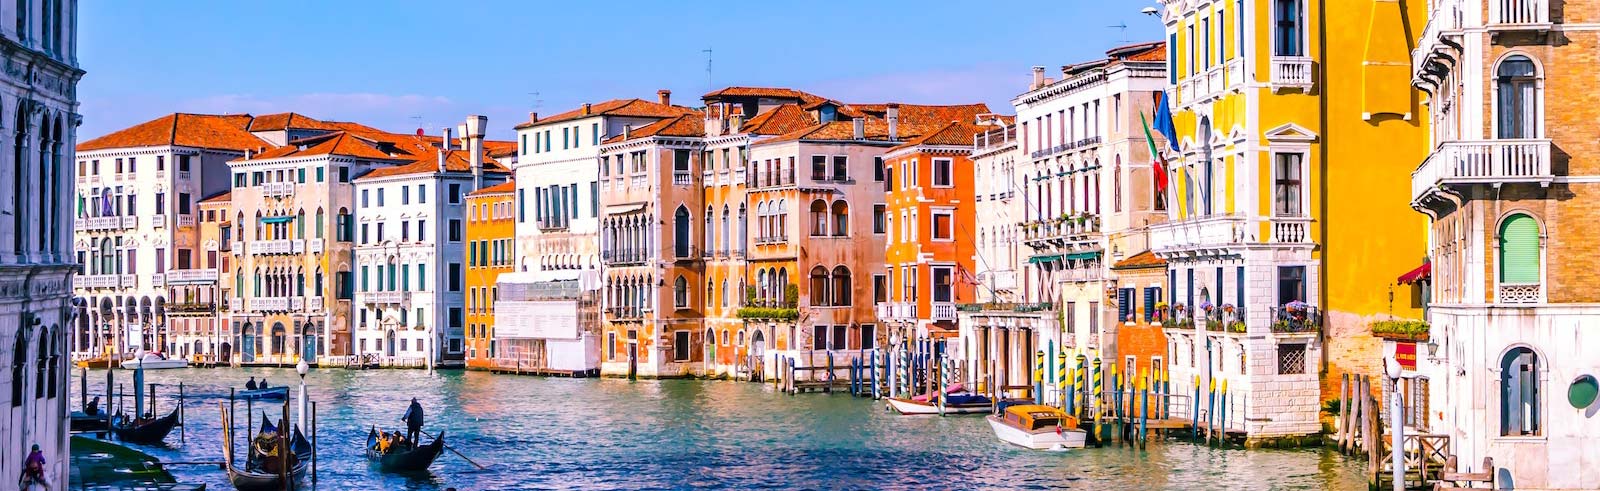 Canal de Venise en Italie avec des bâtiments colorés